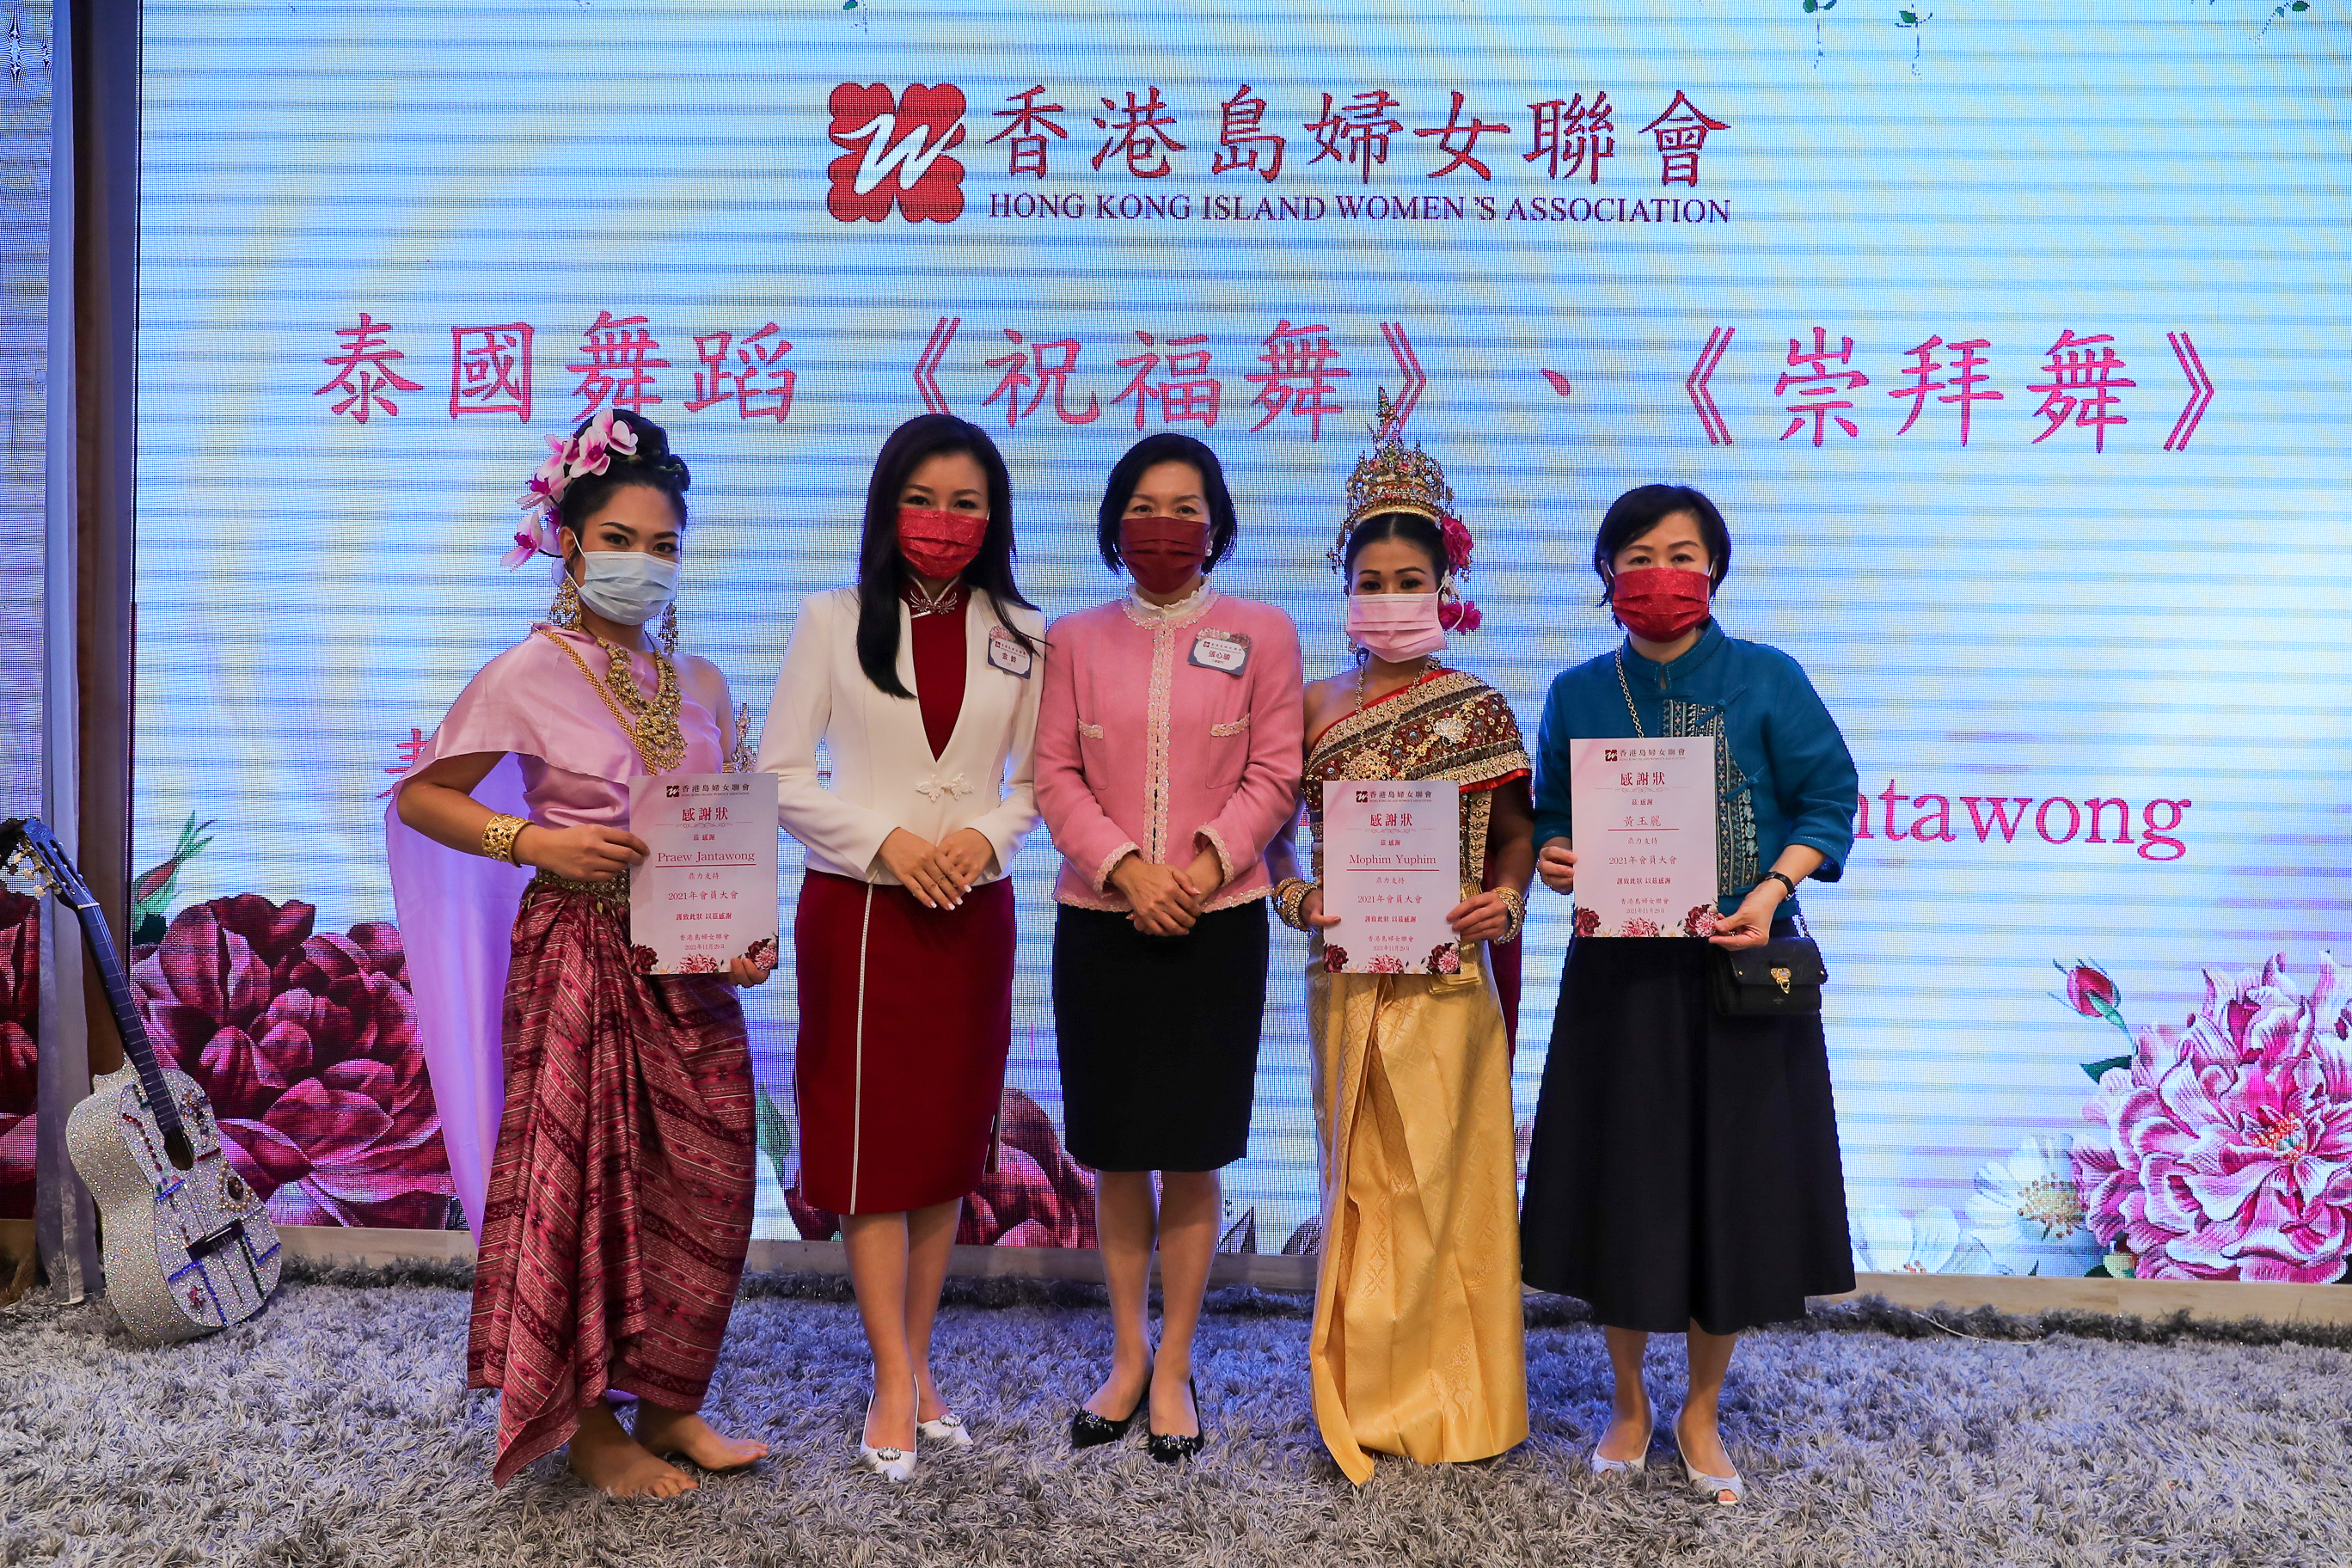 香港島婦女聯會「共融文化義工隊」代表演出泰國傳統舞蹈.jpg